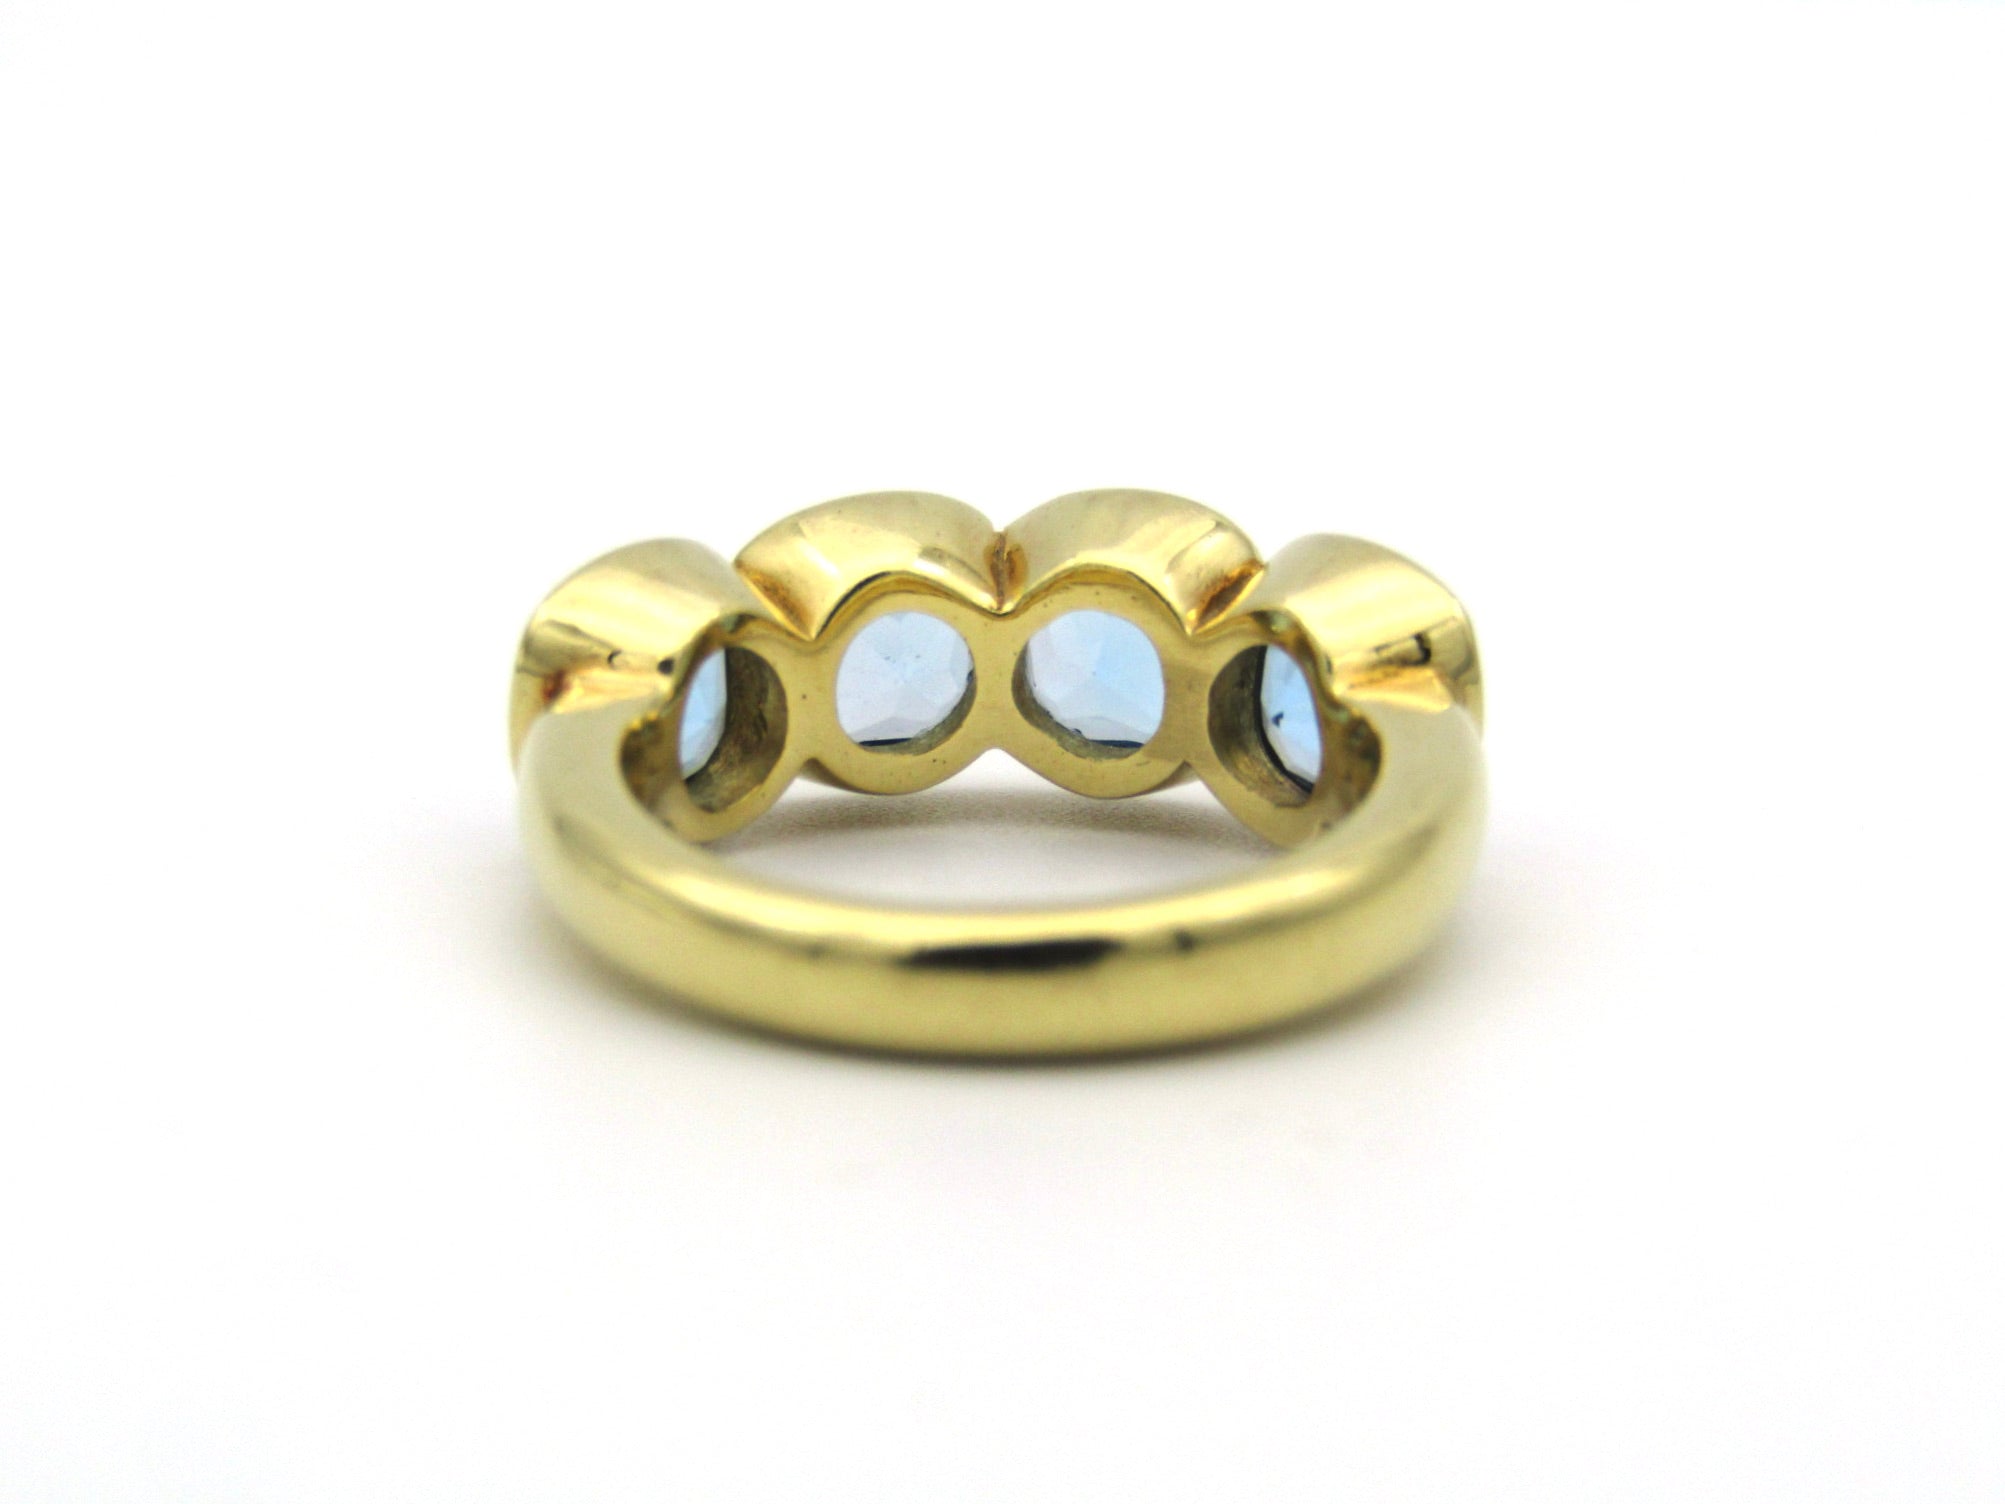 18K gold blue topaz ring.